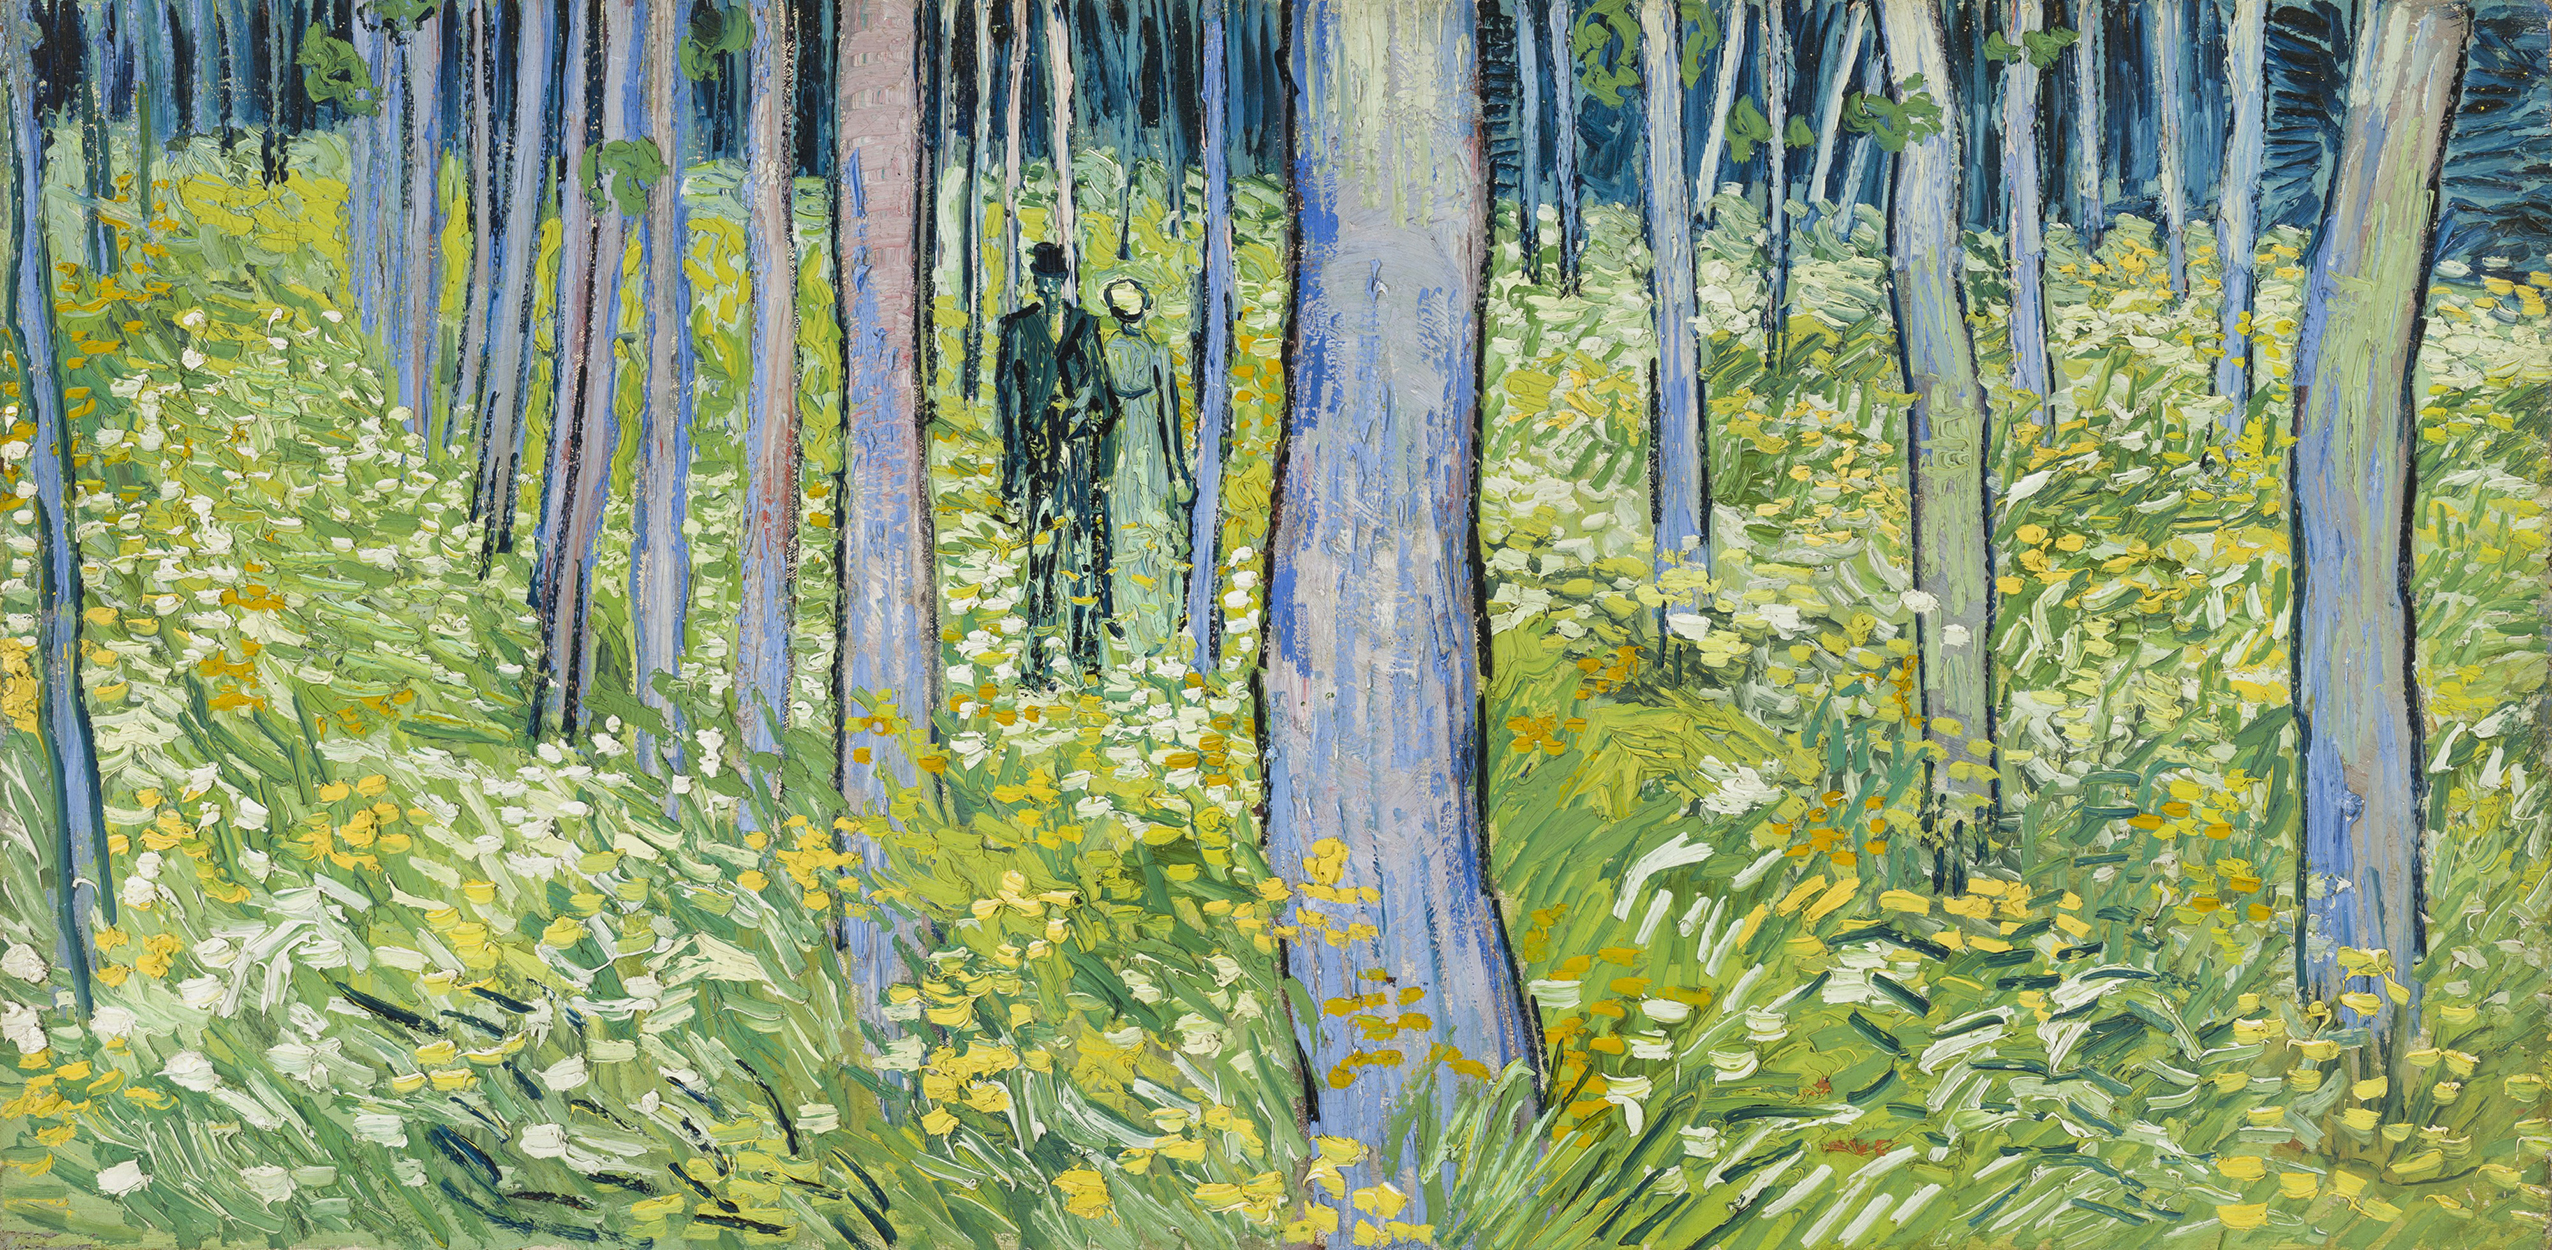 숲을 산책하는 남녀(Undergrowth with Two Figures) by 빈센트 반 고흐 - 1890 - 49.5 x 99.7cm 